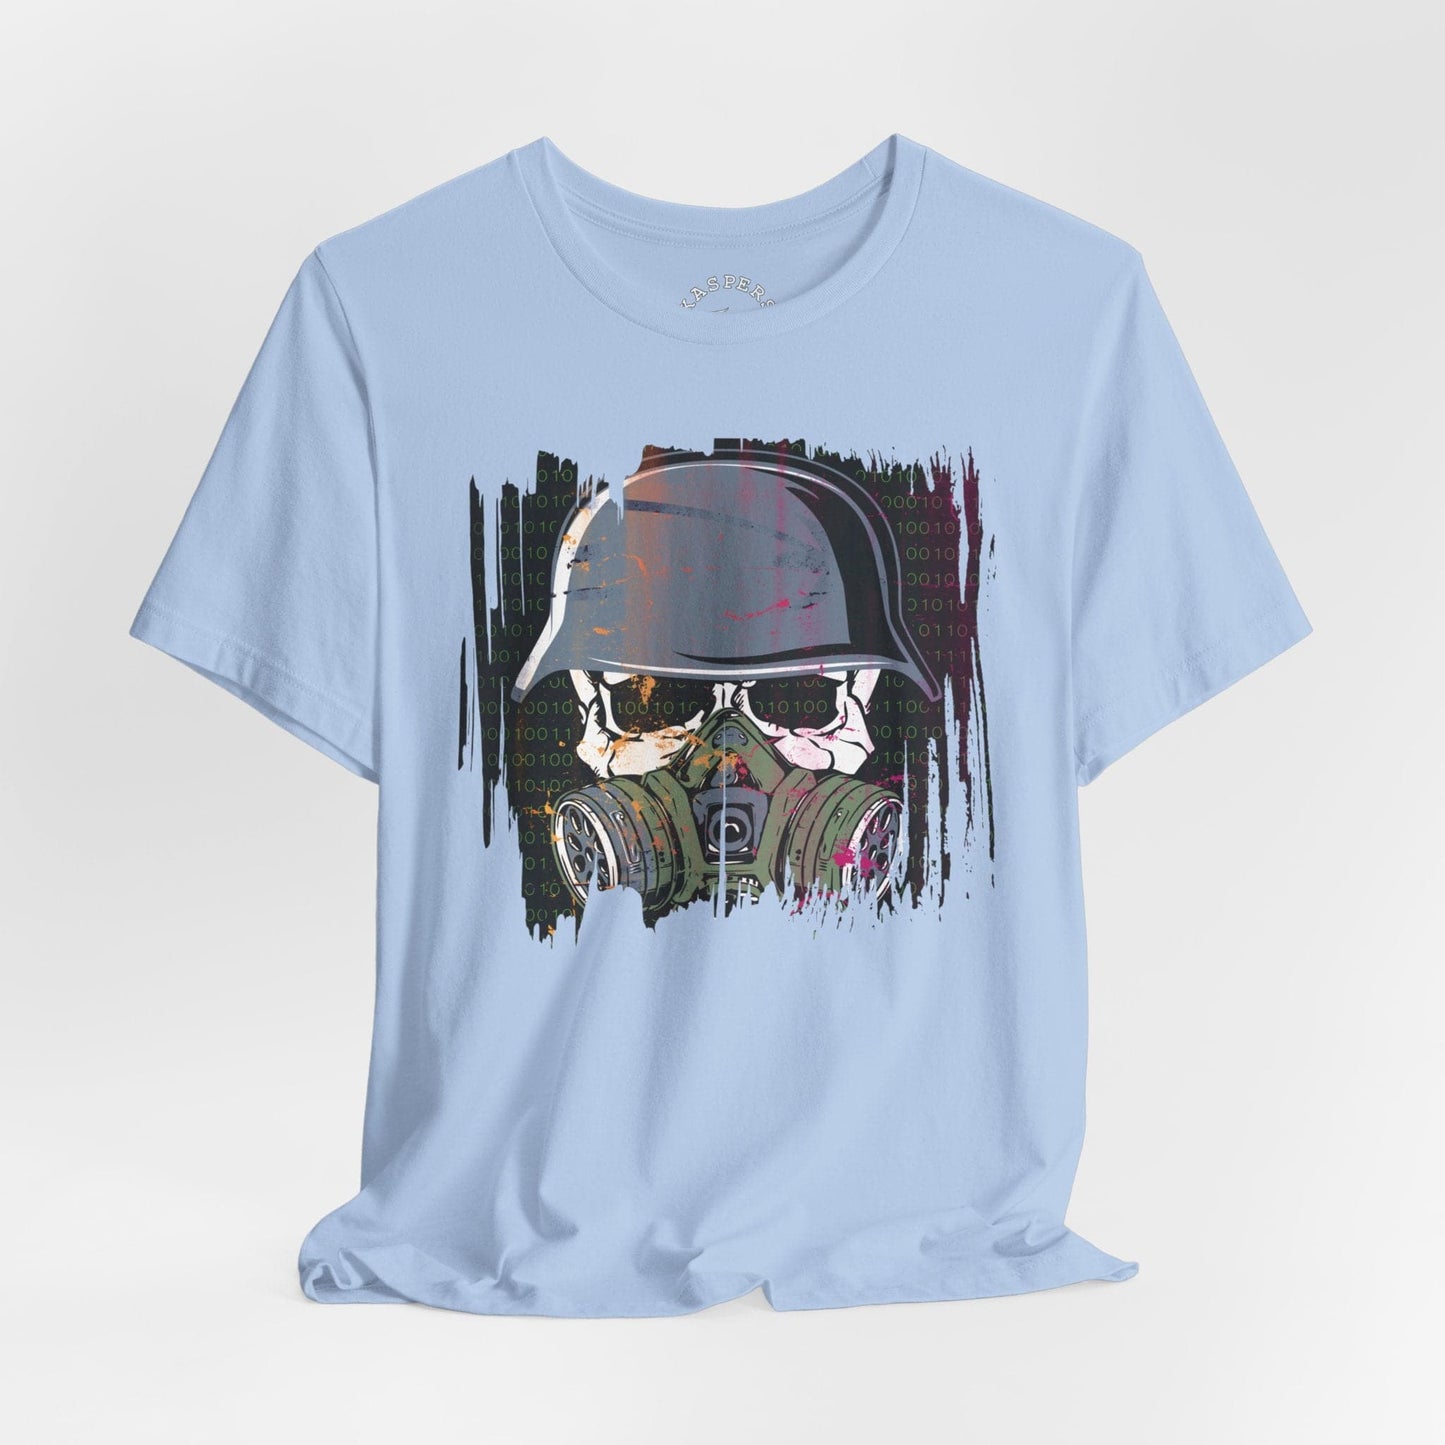 Dystopian Nightmare T-Shirt